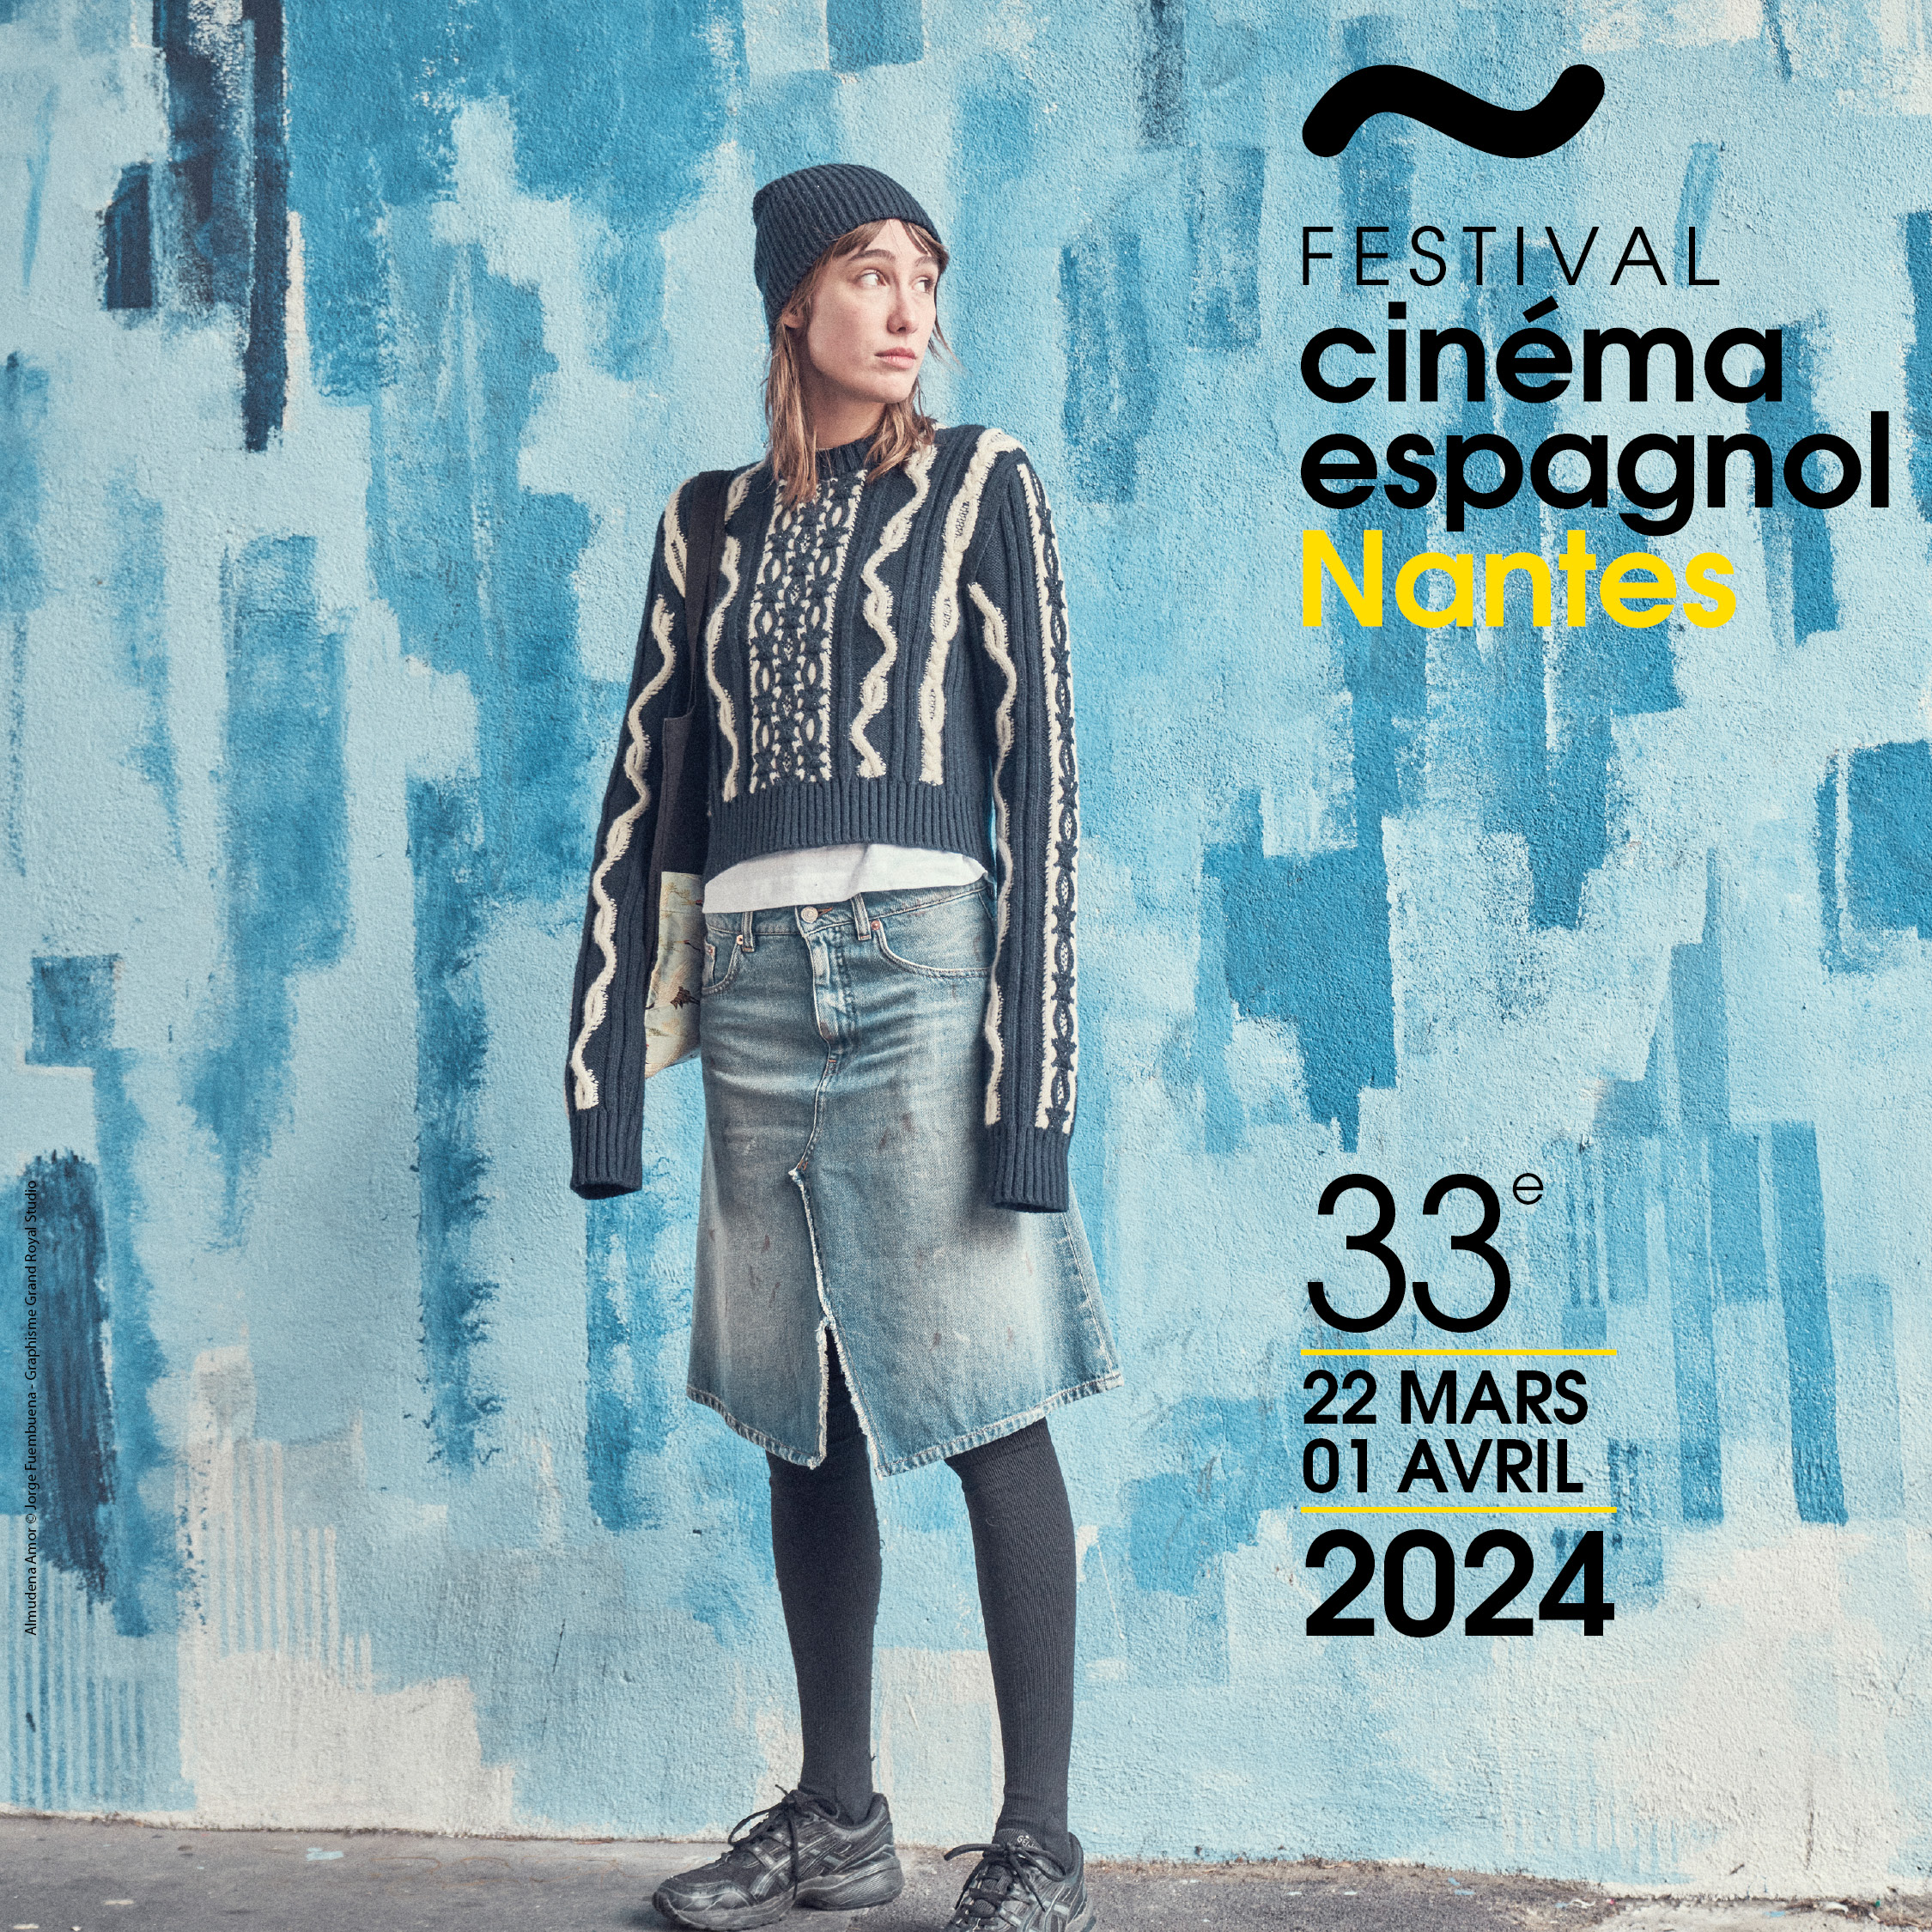 Le Festival du cinéma espagnol de Nantes au Tarif Super Offert = 0€ !